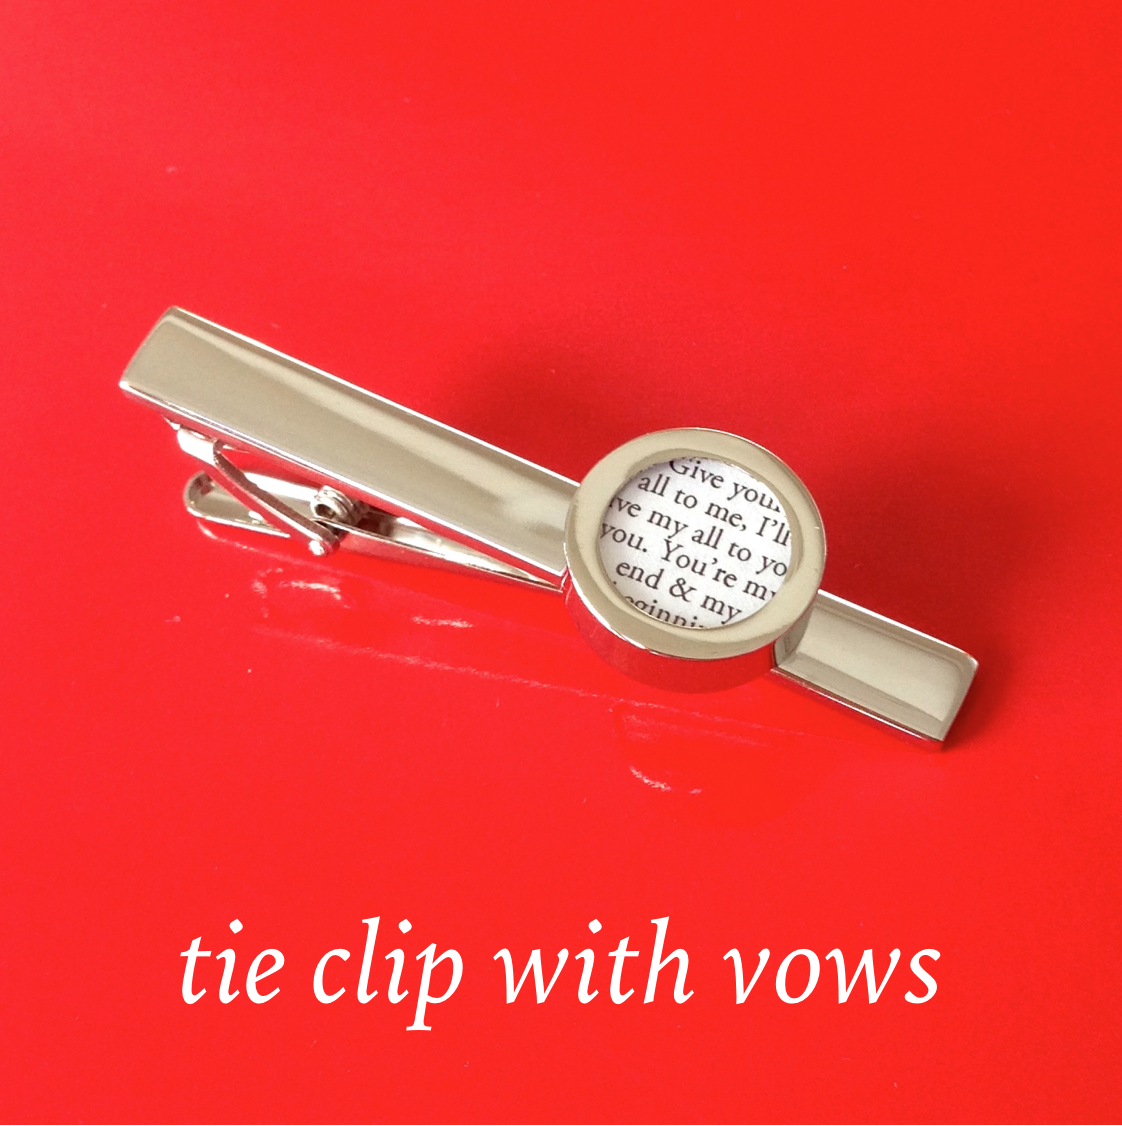 Tie clip with wedding vows